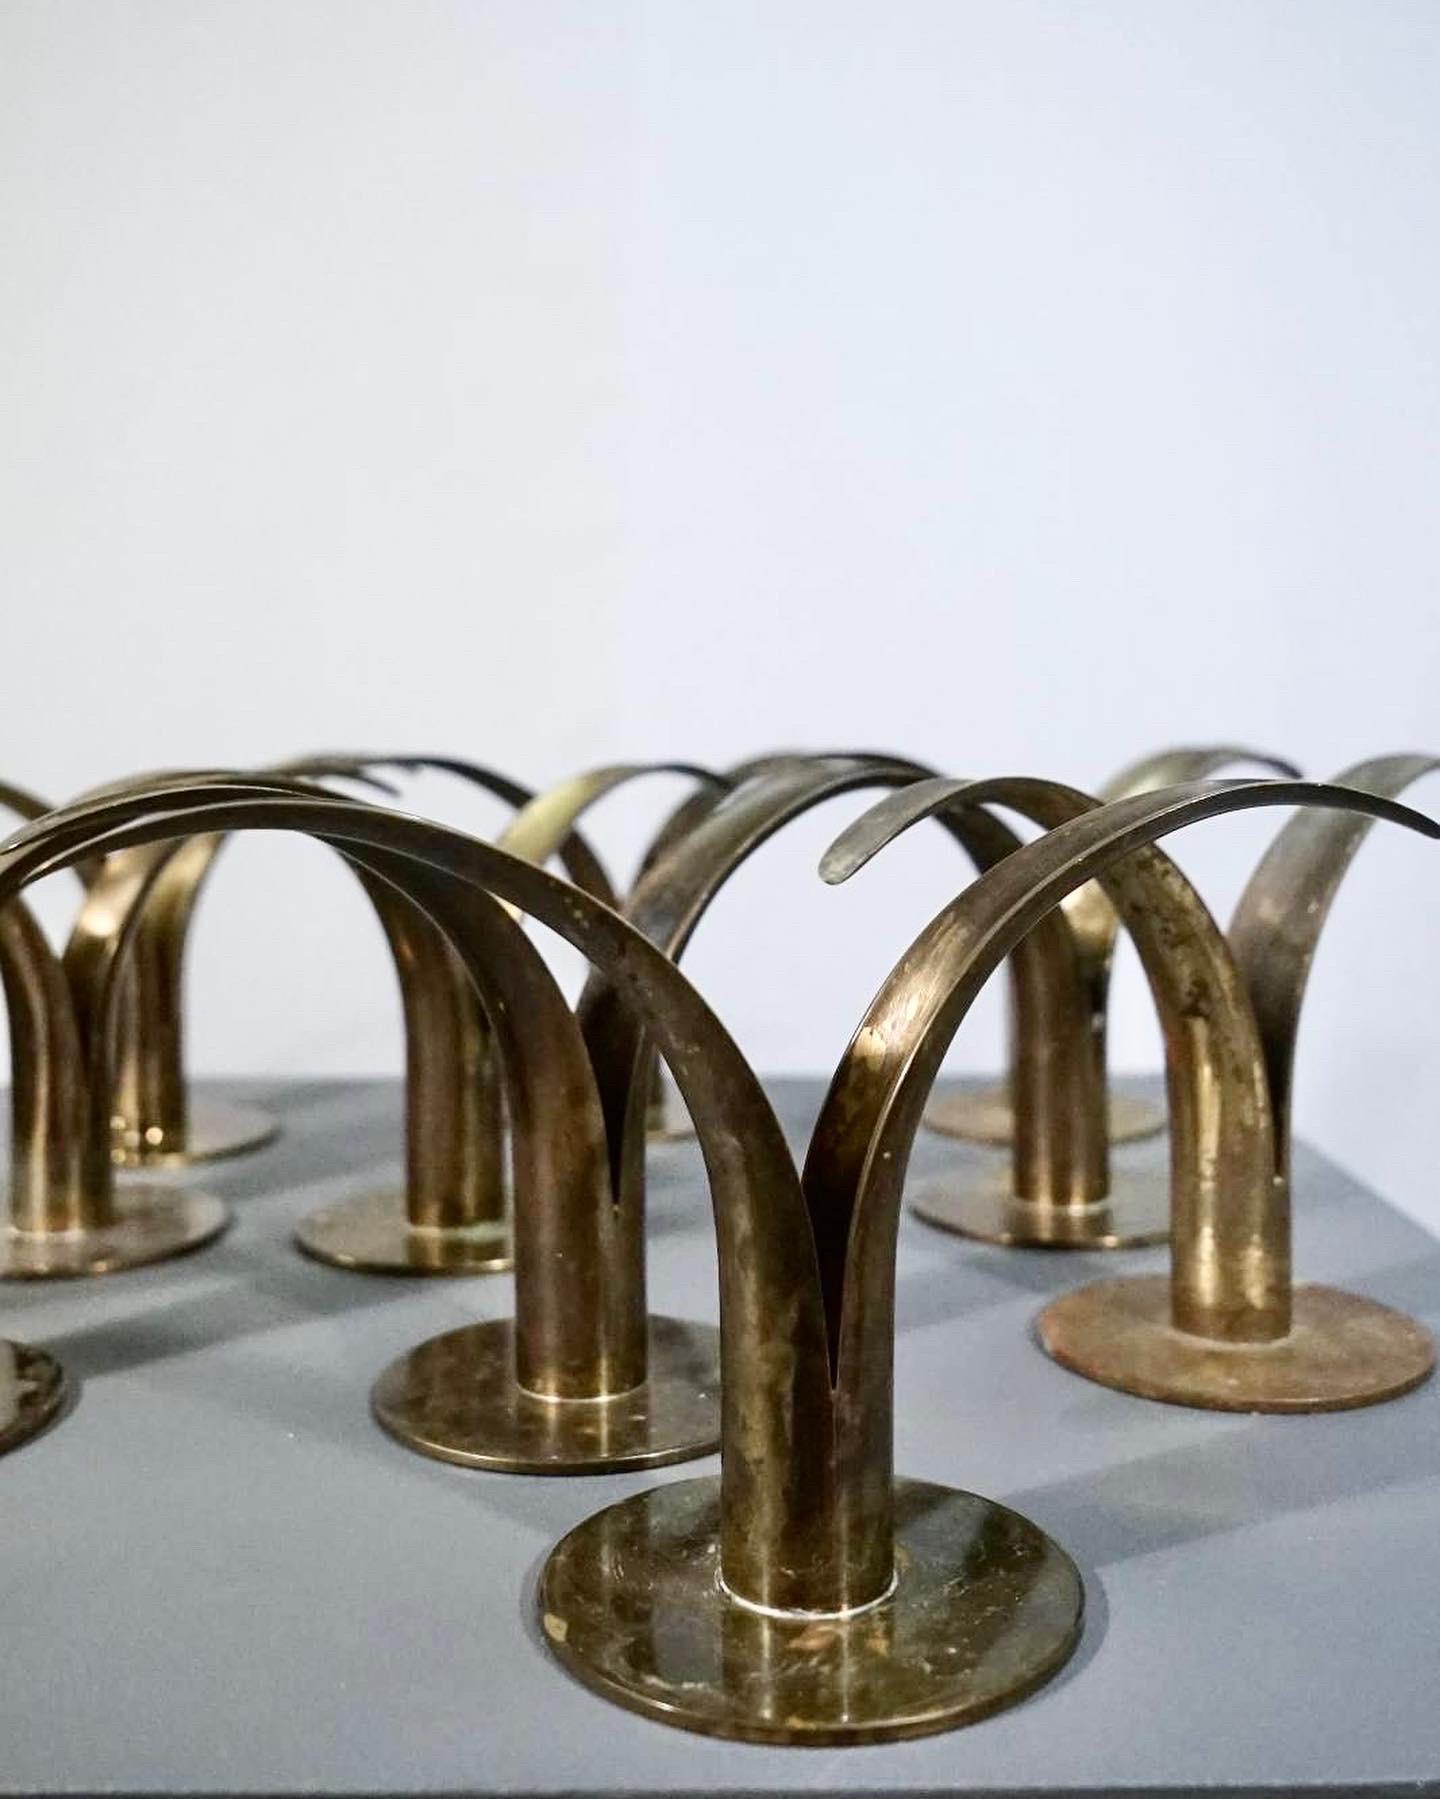 Seltener Satz von 10 Lilienkerzenhaltern aus patiniertem Messing, entworfen von Ivar Ålenius Björk für Ystad Metal.
Die Kerzenhalter sind in gutem Originalzustand mit einer schönen Patina.
Satz von 10 verfügbar, aber wir haben mehr auf Lager, wenn